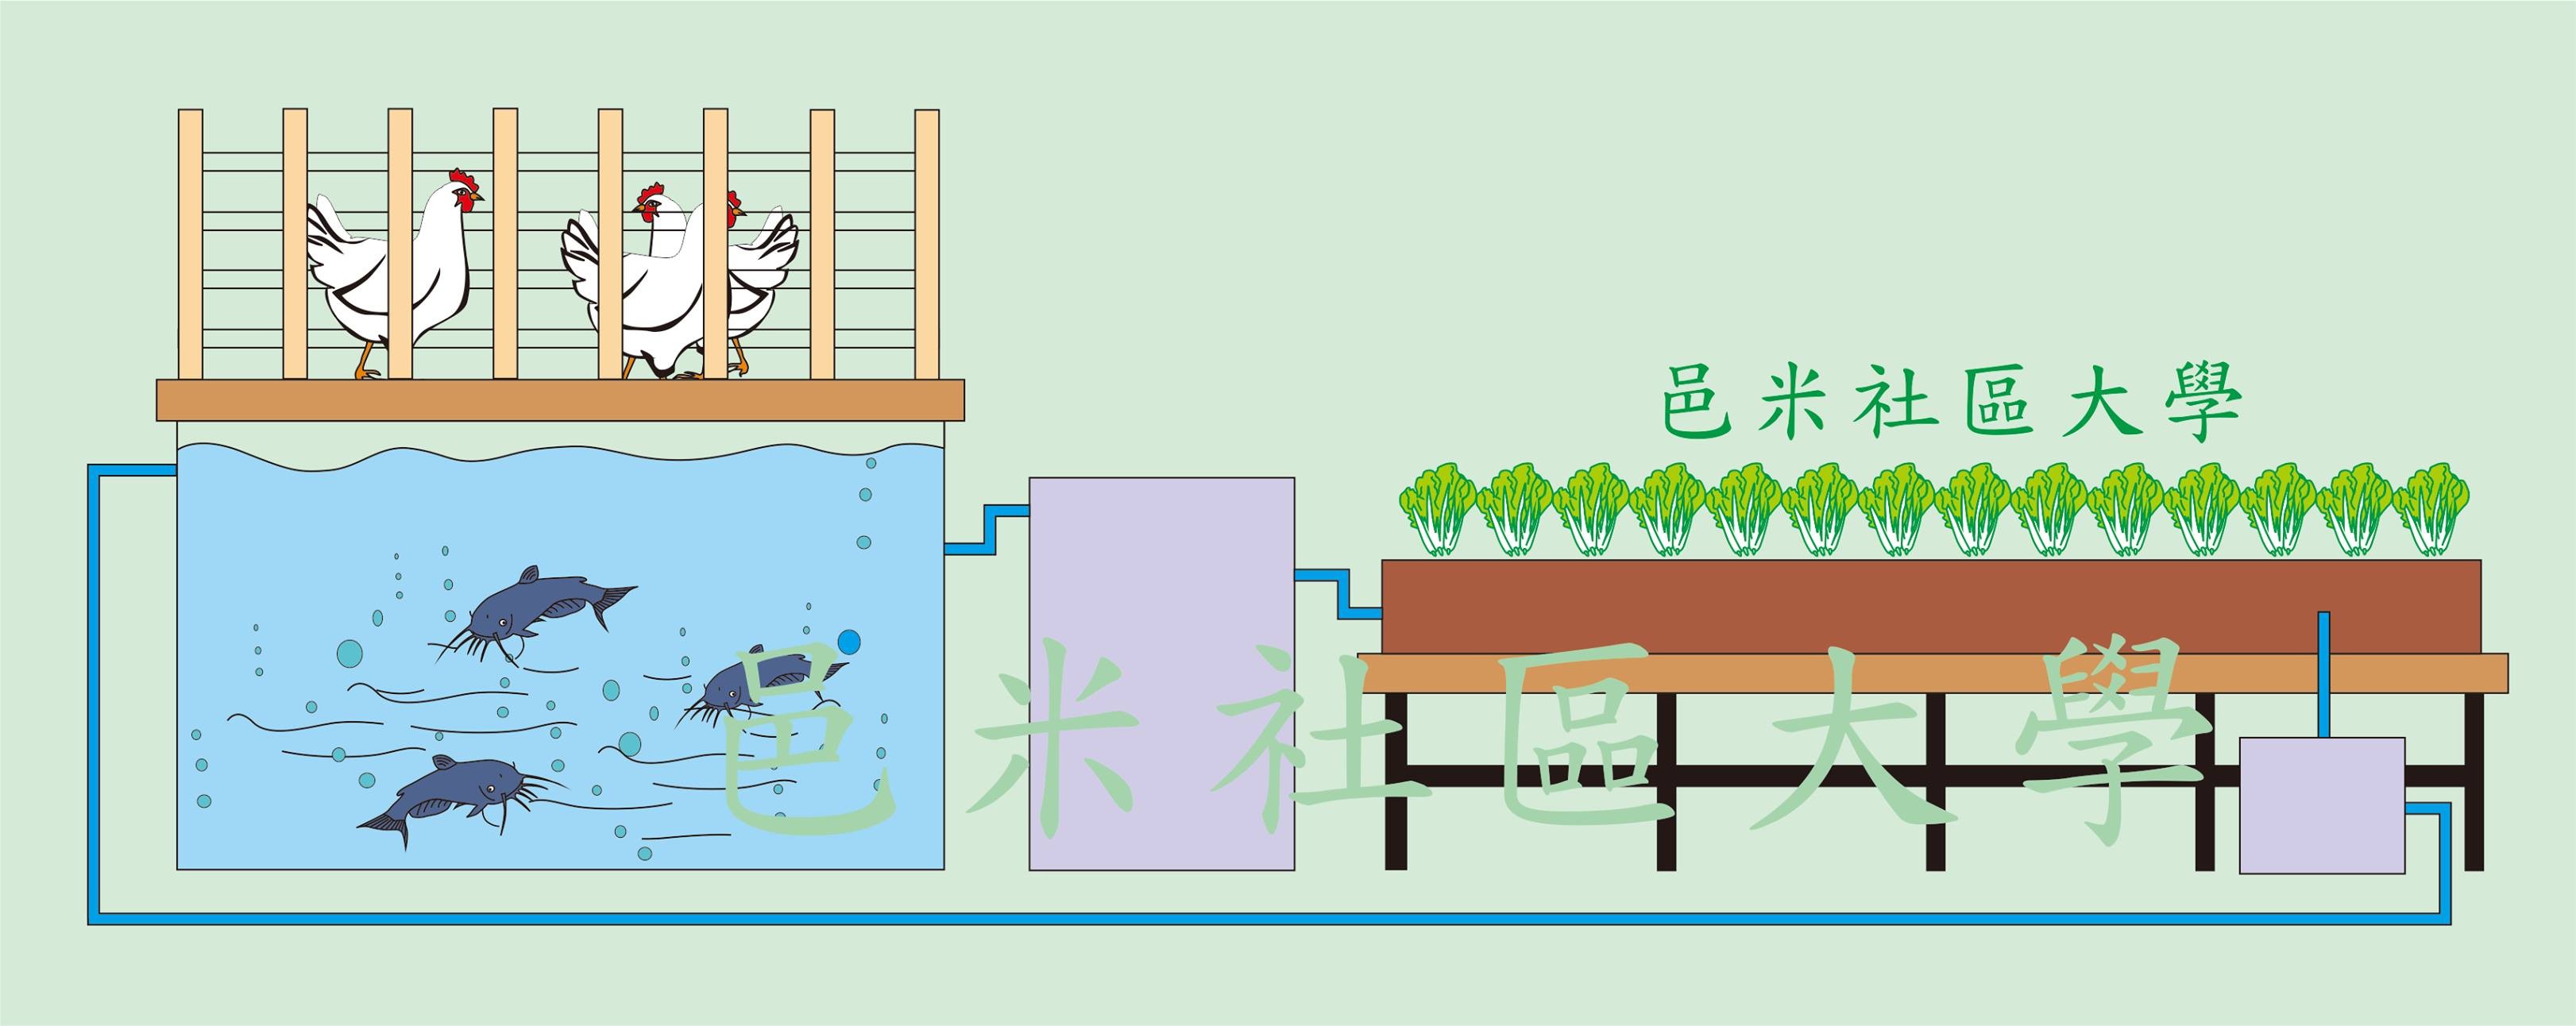 ▼鱼菜共生的原理,让动物排泄物成为绿化农作物的有机肥料